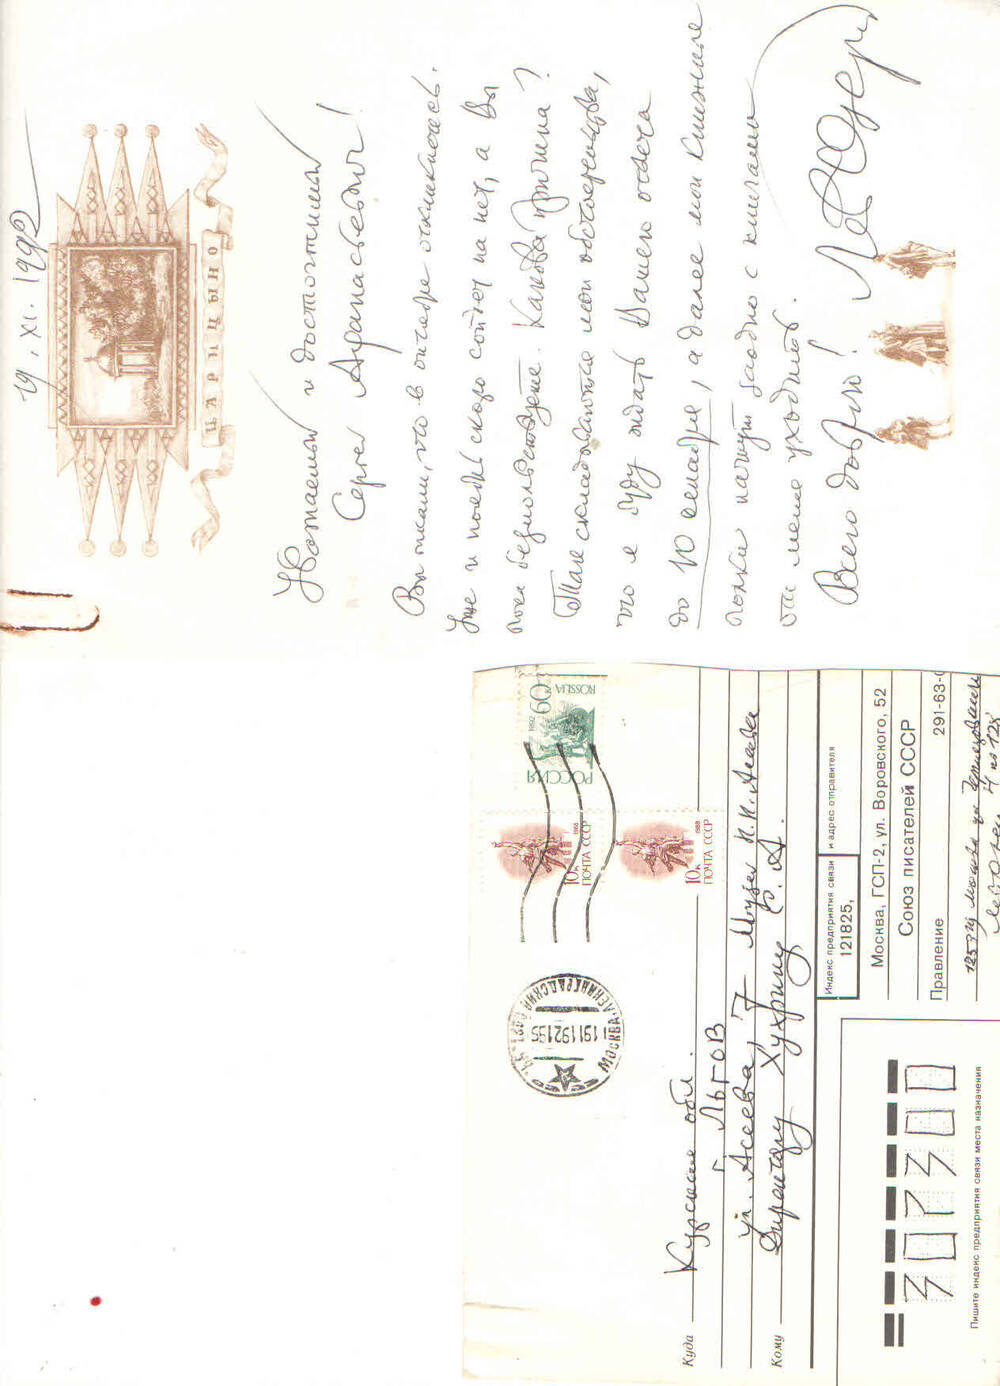 Письмо
Л. Озеров к С.А. Хухрину от 19.11.92г. 1стр. текст рукописный, чернила черные. Озеров пишет о передаче своих фондов. Прилагается конверт.